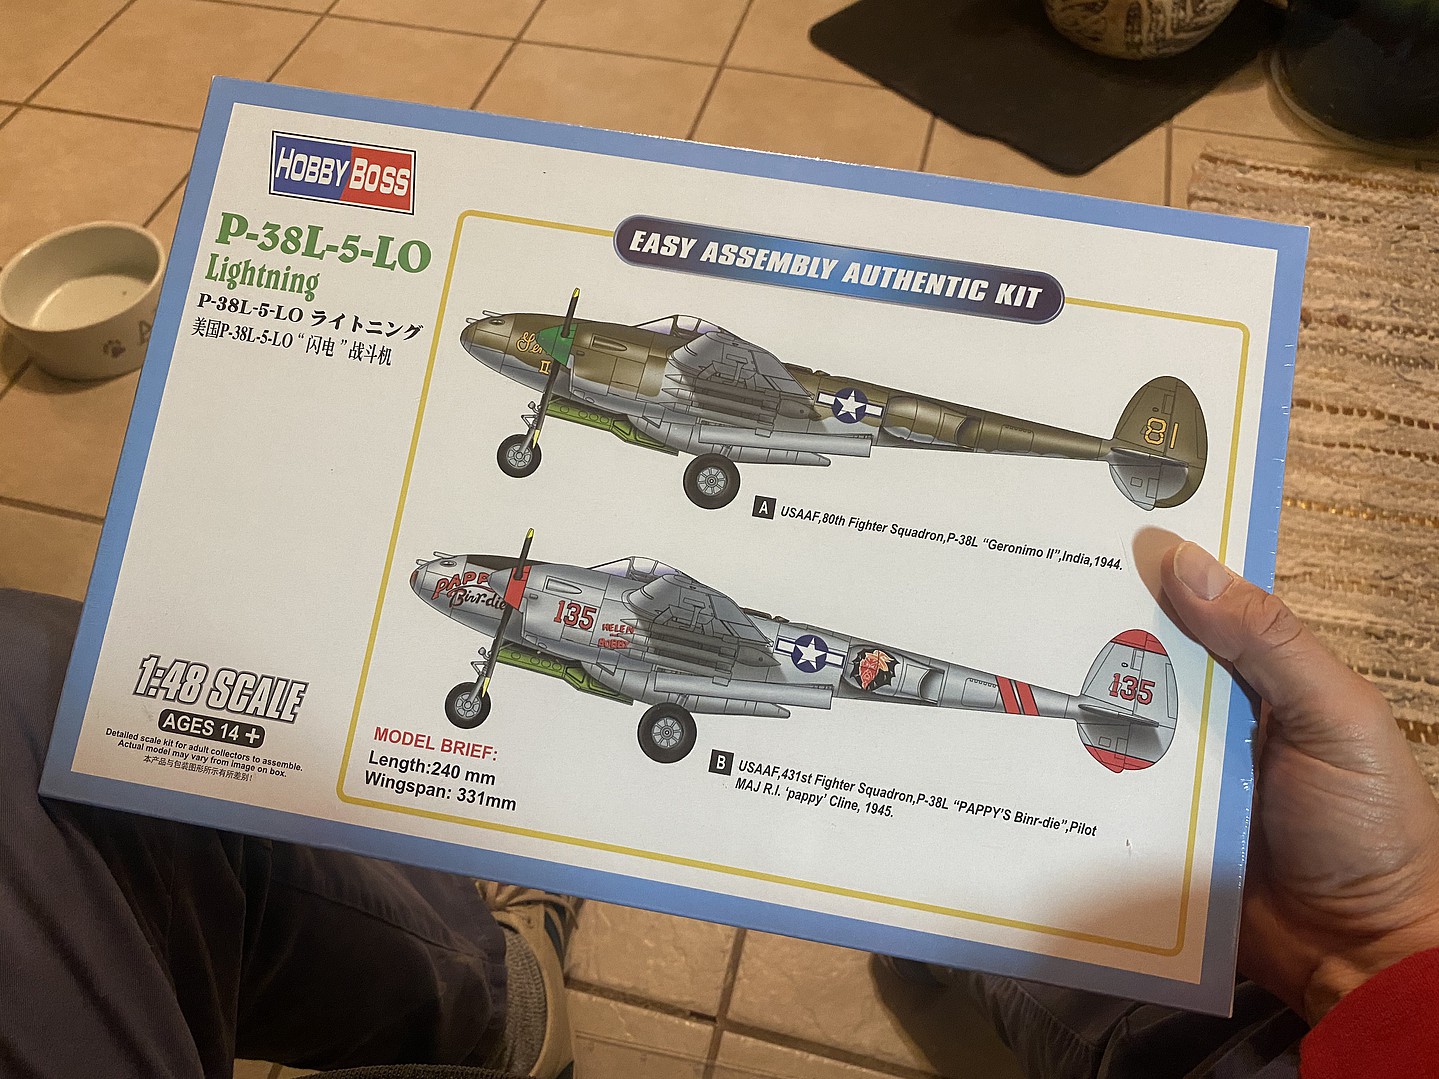 ホビーボス 1/48 エアクラフトシリーズ P-38L-5-LO ライトニング